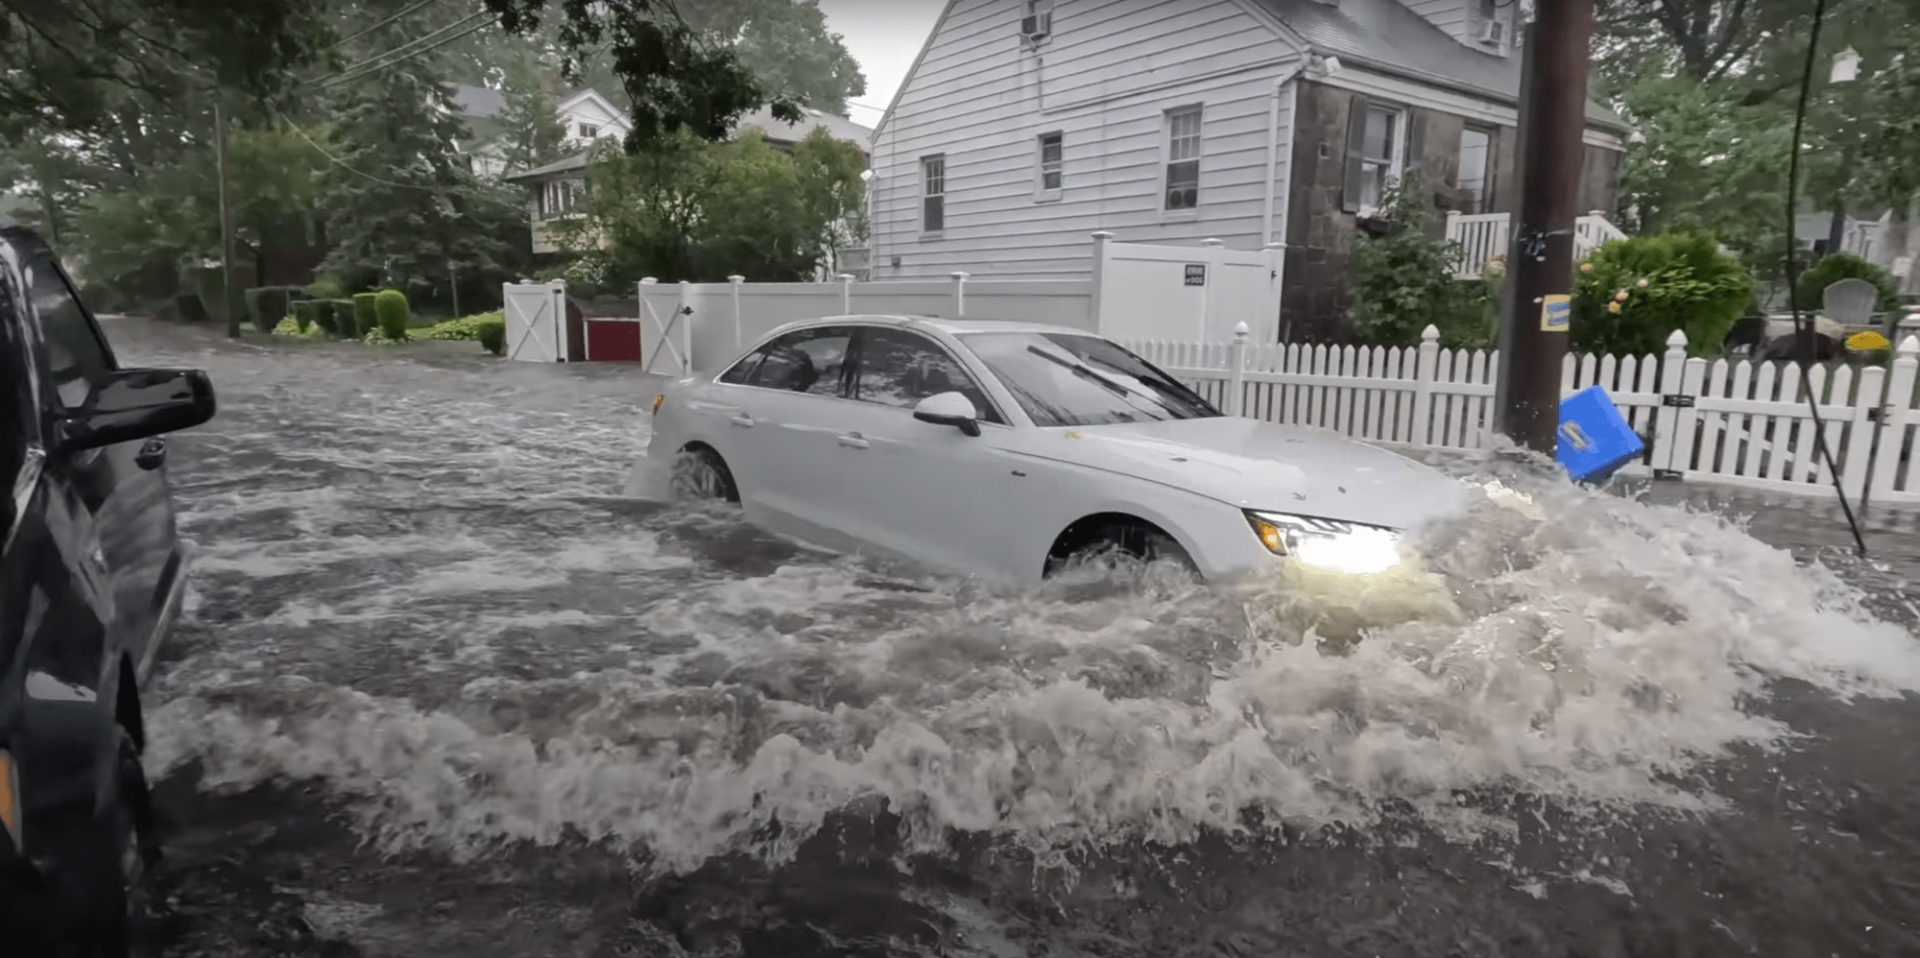 Przepustowość nowojorskiej sieci kanalizacyjnej wynosi około 4,5 cm na godzinę. 29 września deszcz padał zaś z intensywnością aż 6 cm. źródło: WXChasing, New York Flooding Chaos – Brooklyn – Long Island – Raw 4k with Drone, https://www.youtube.com/watch?v=ZjY_uB7p5Hw